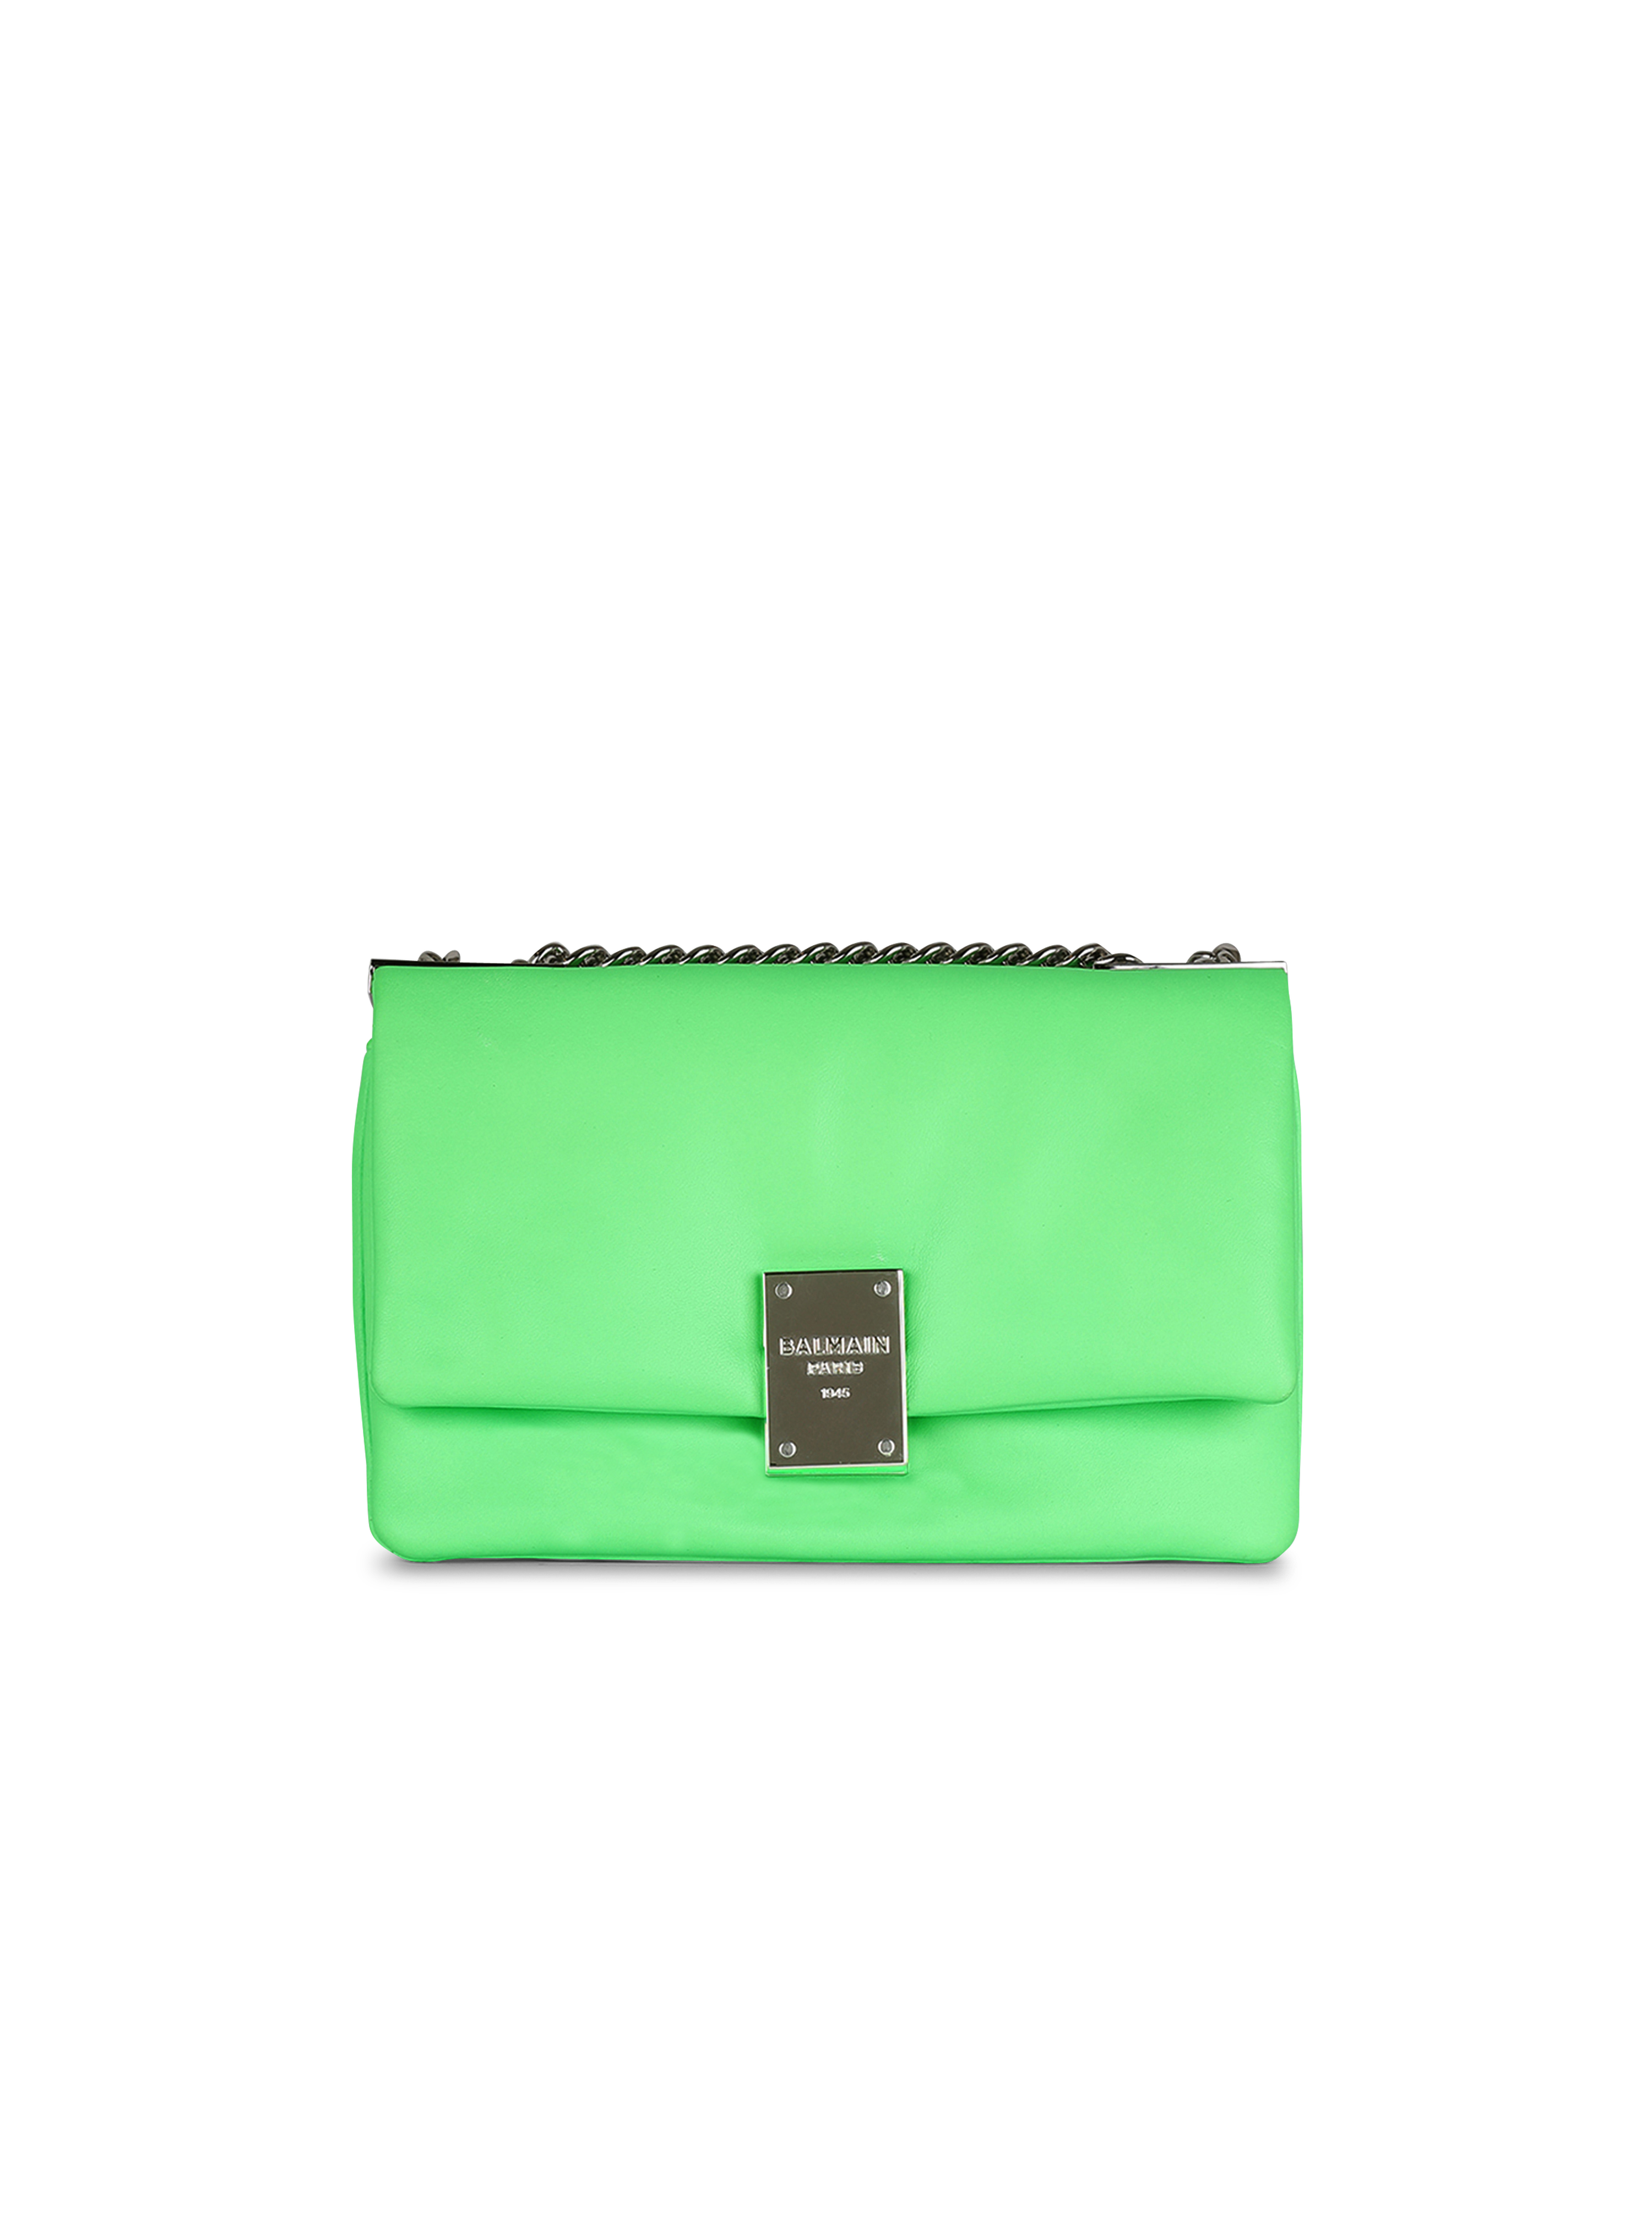 Soft bag 1945 piccola in tessuto spalmato, verde